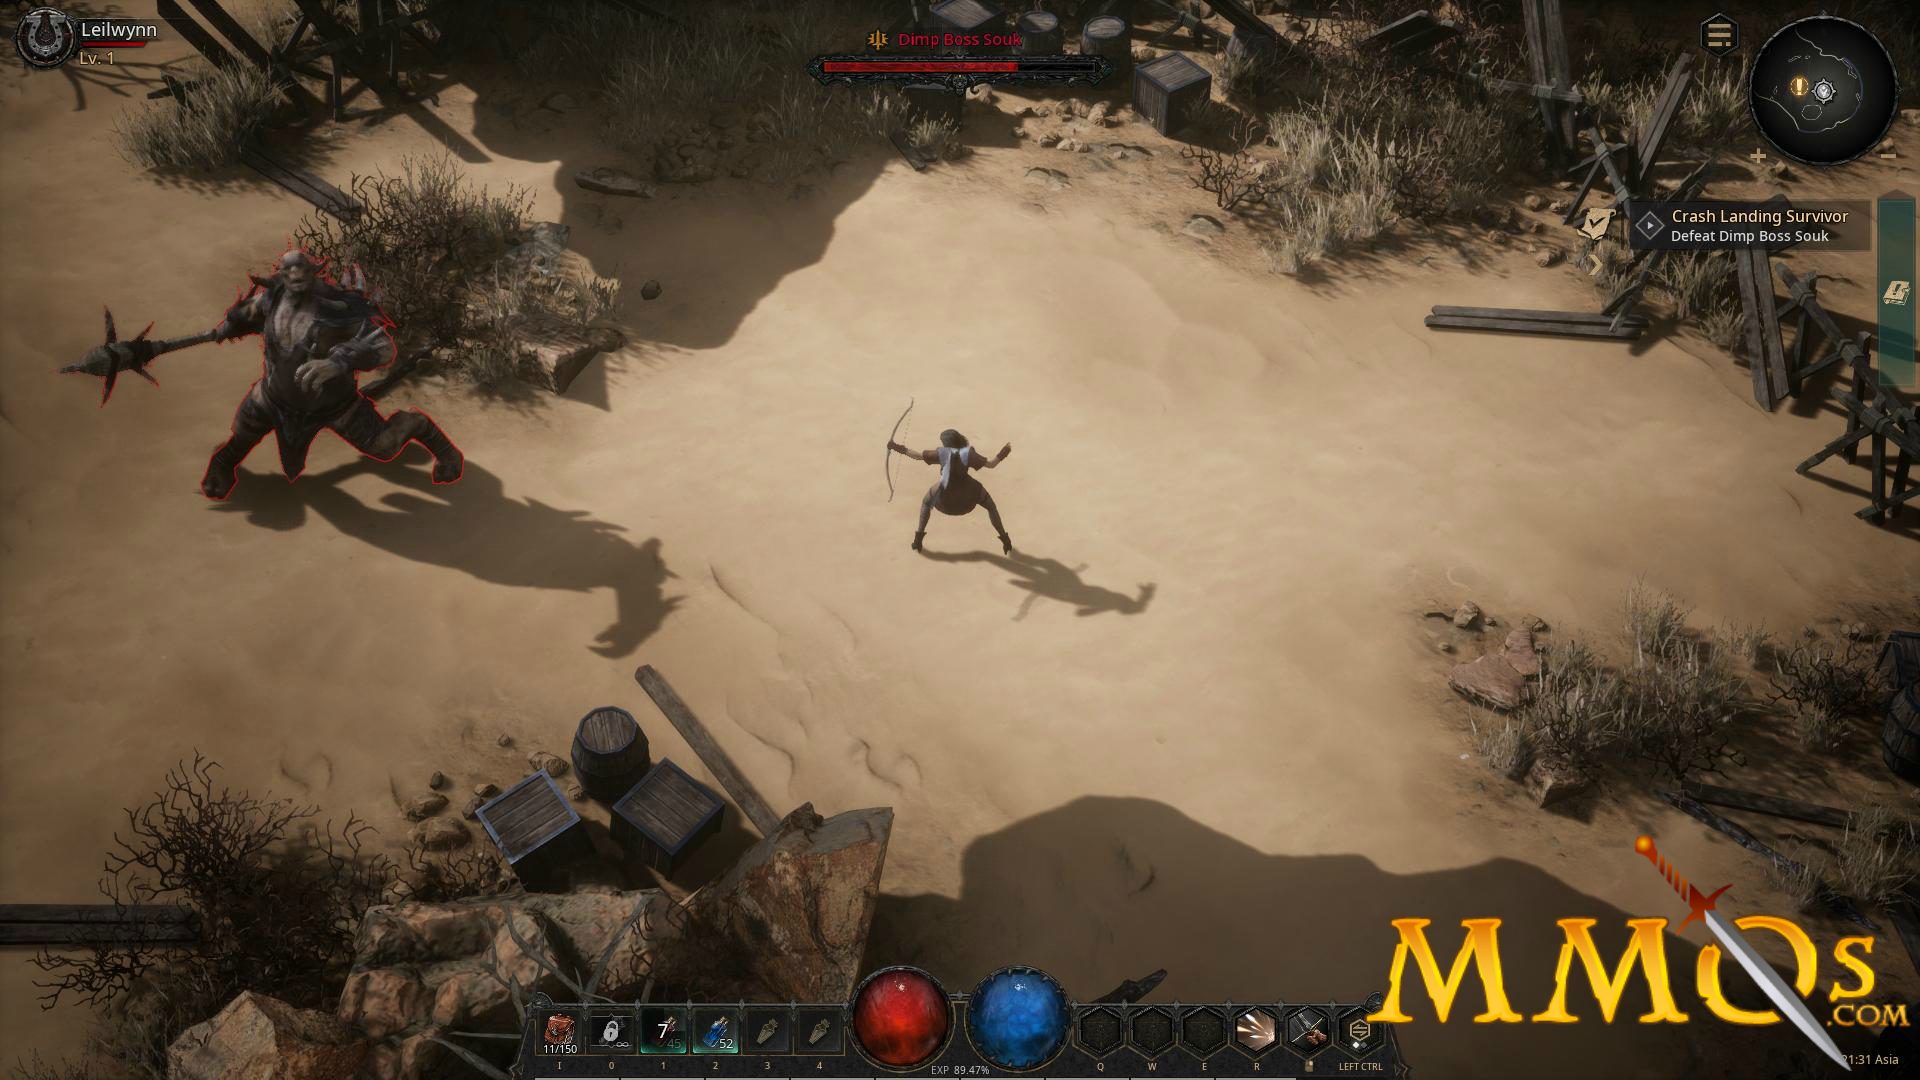 Undecember - Le MORPG Undecember illustre son gameplay - JeuxOnLine